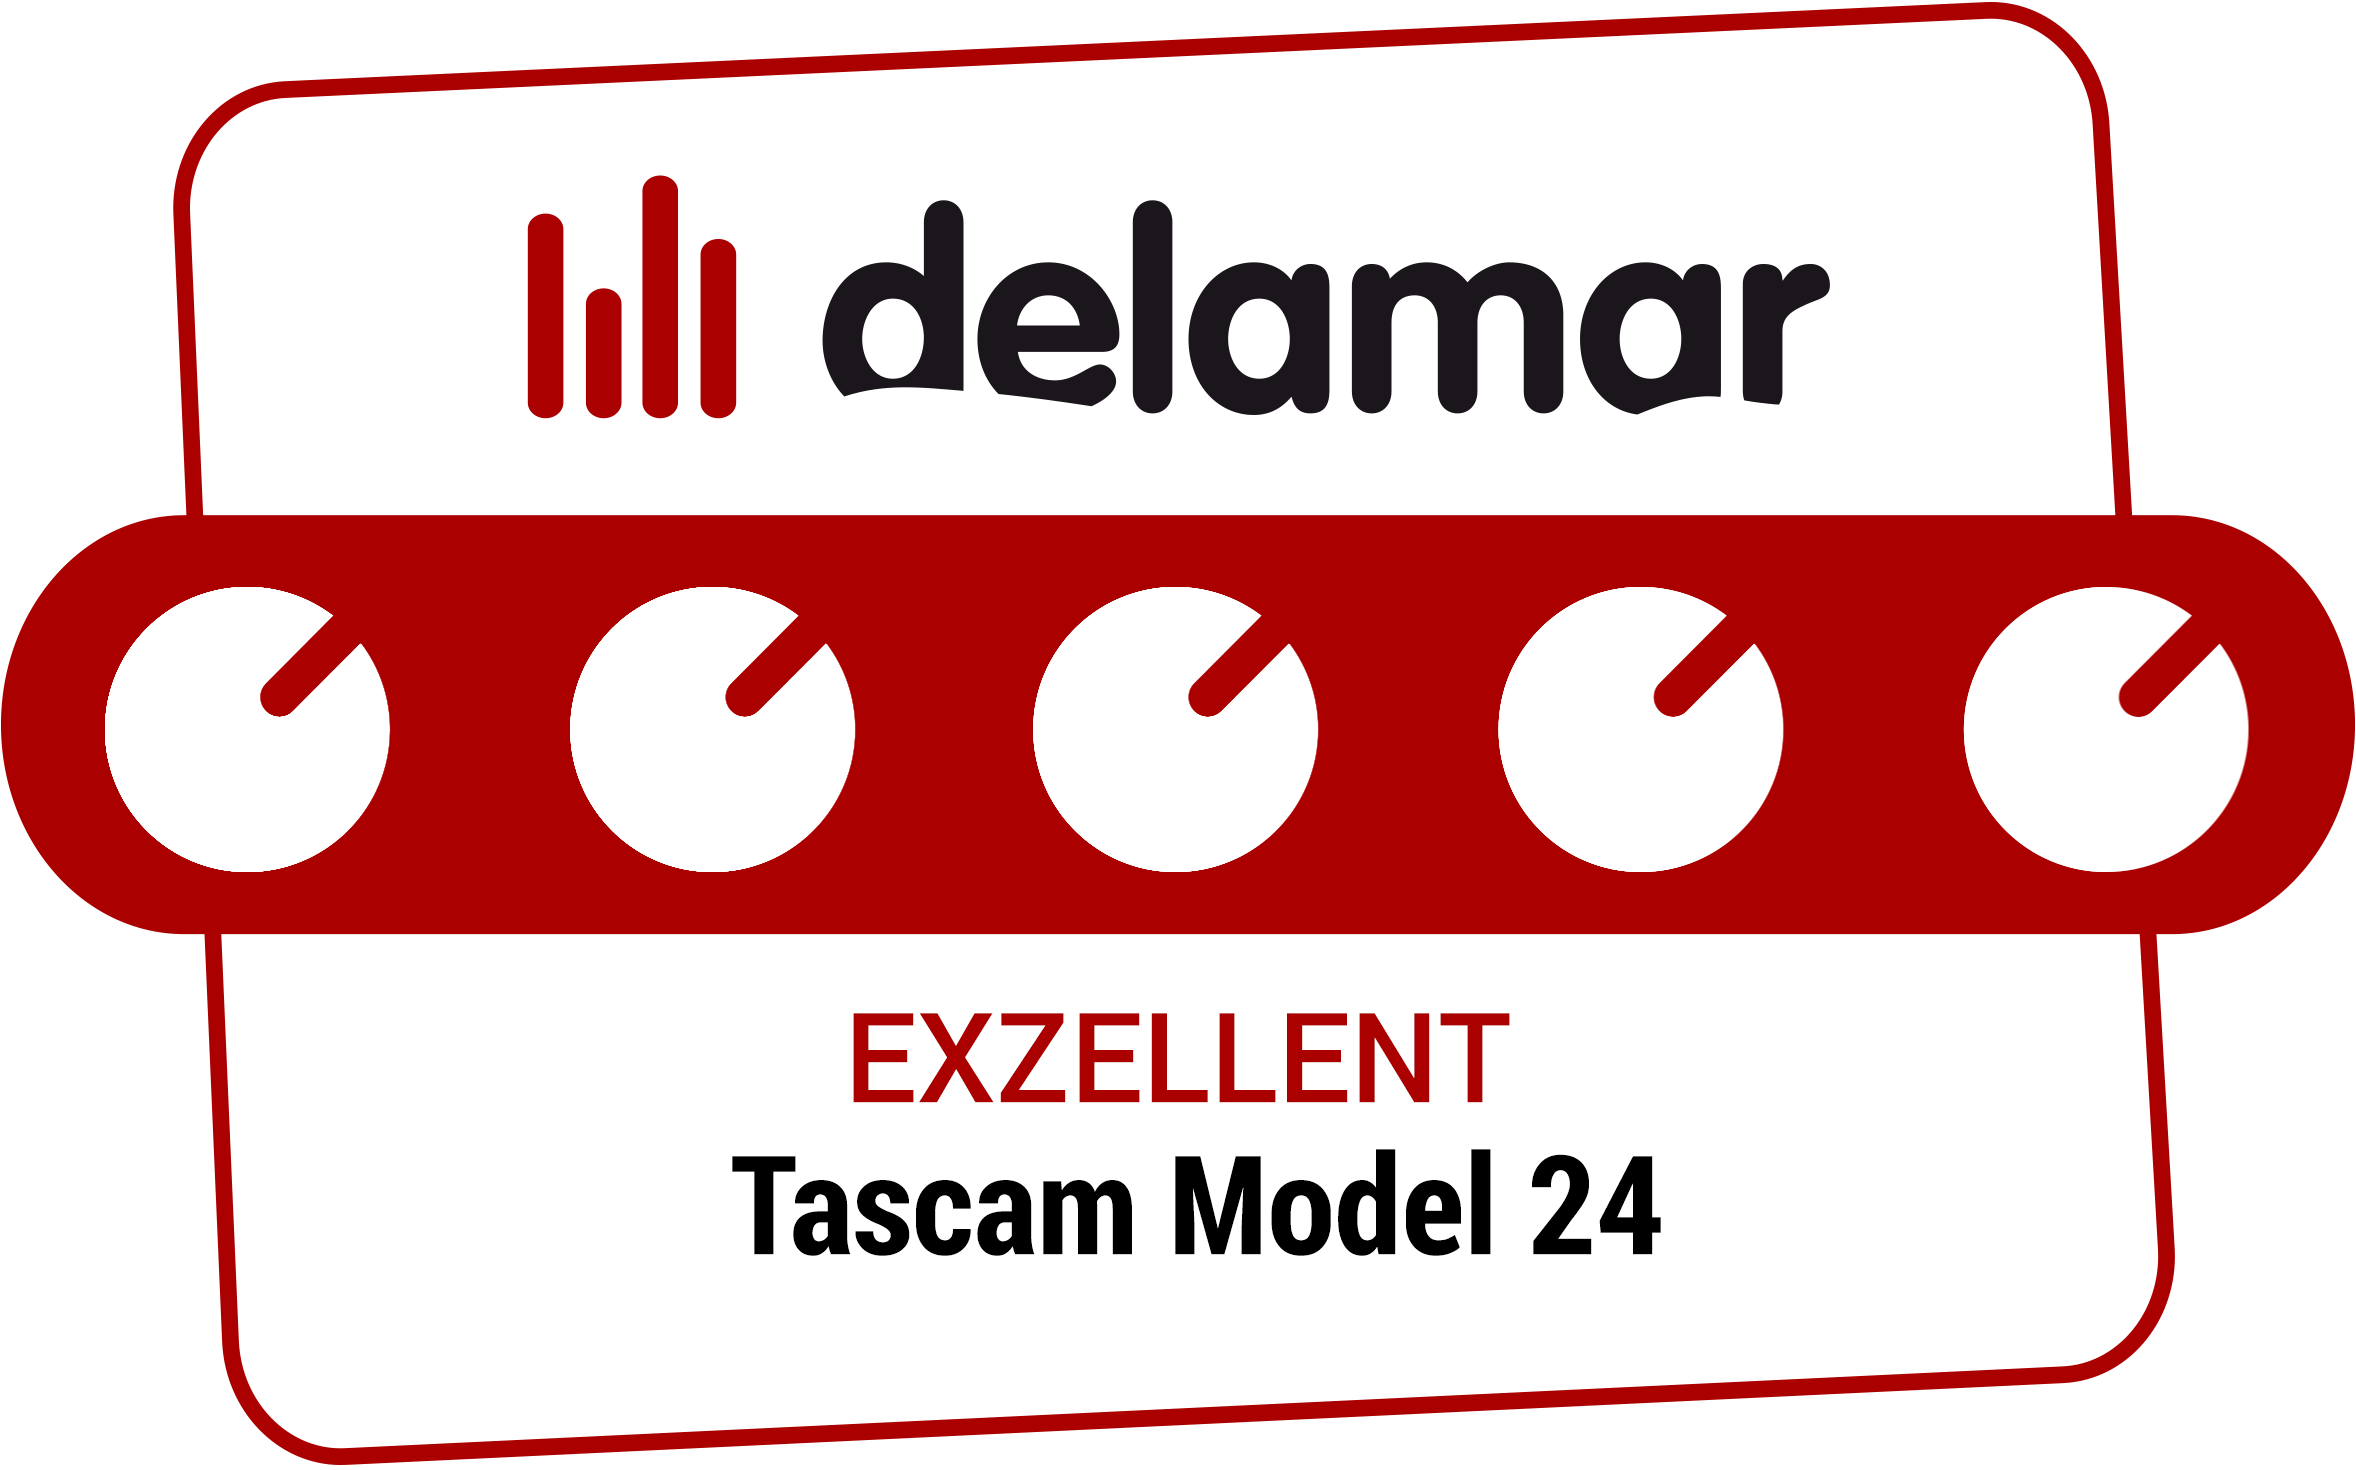 Delamar Testsiegel 'Exzellent' für Tascam Model 24